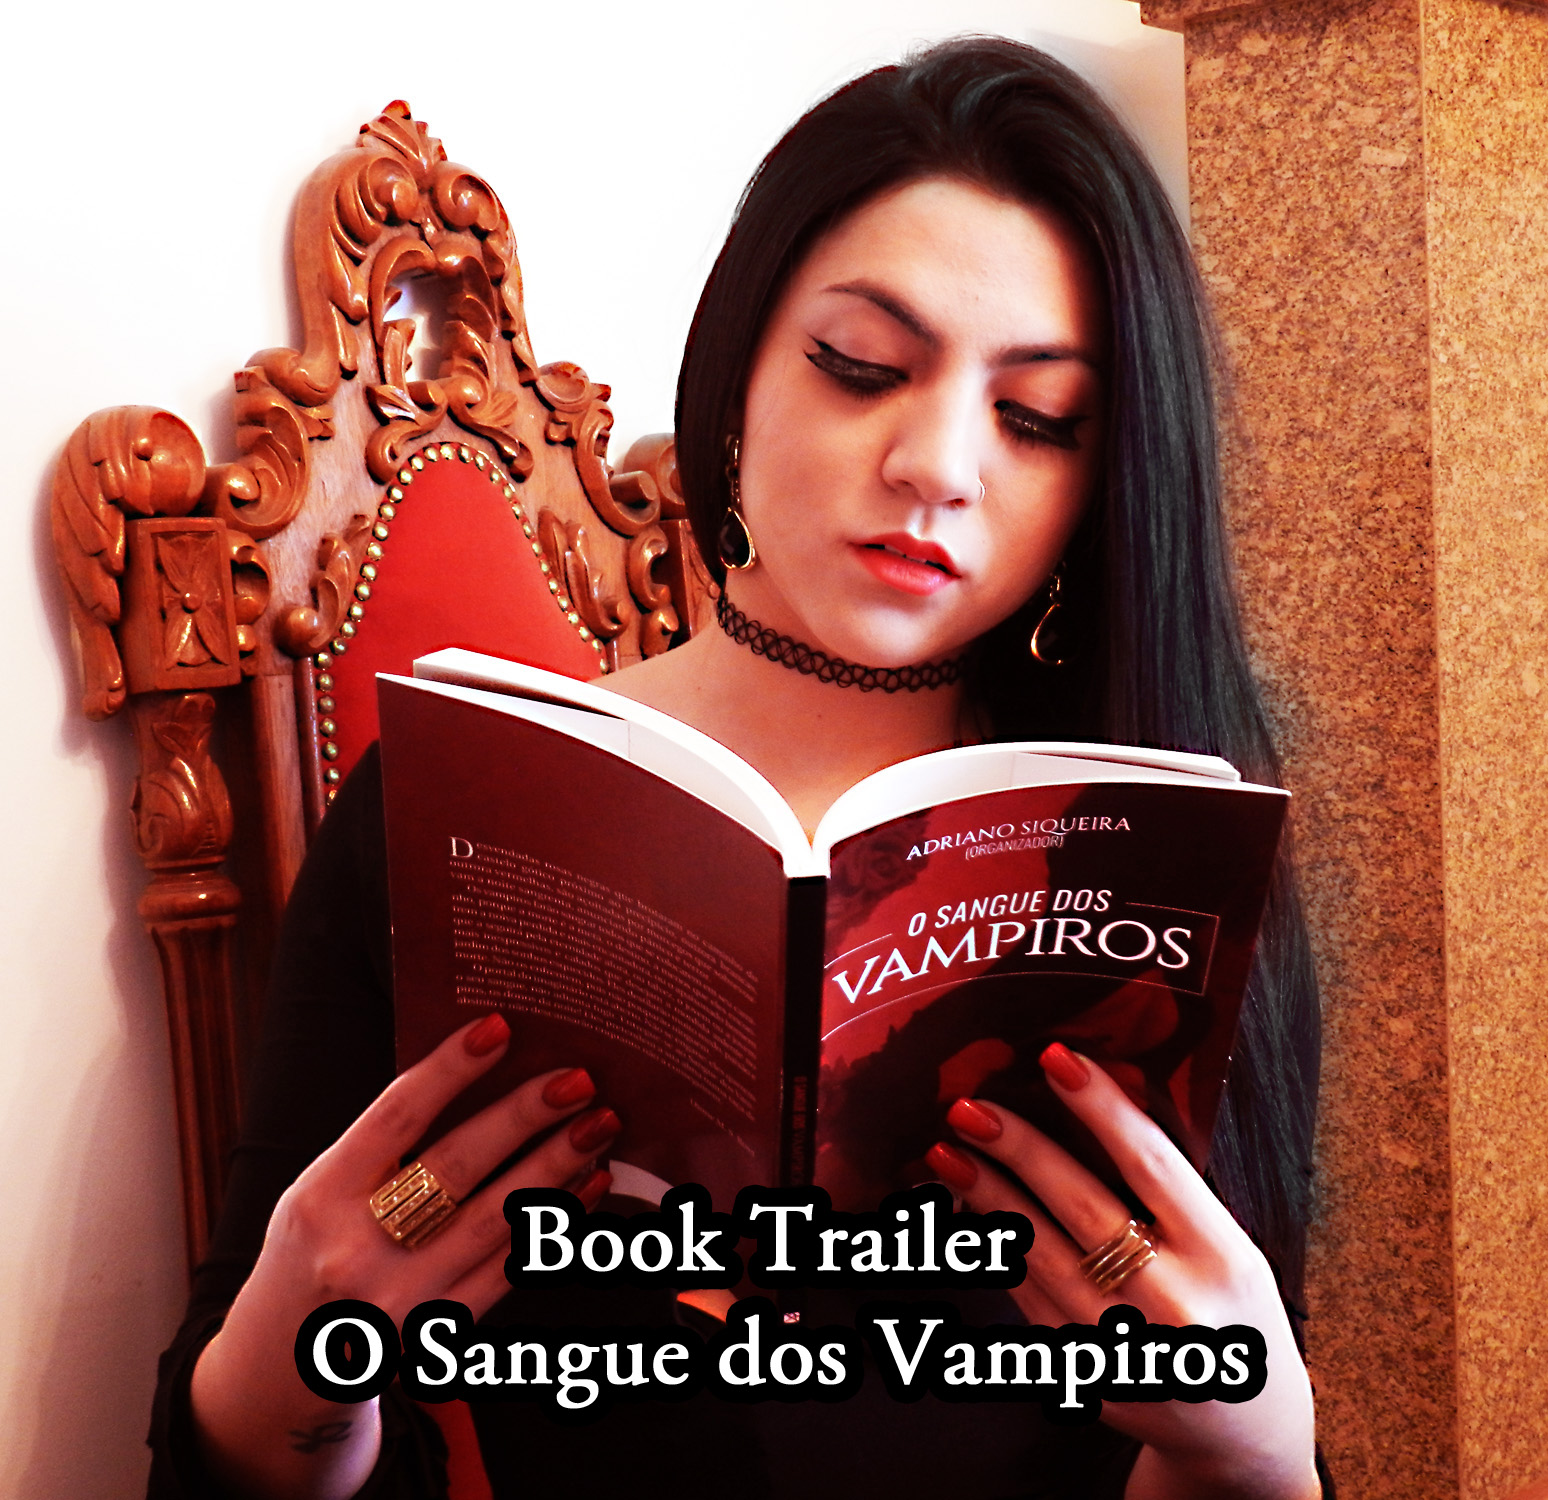 Book Trailer - O Sangue dos Vampiros